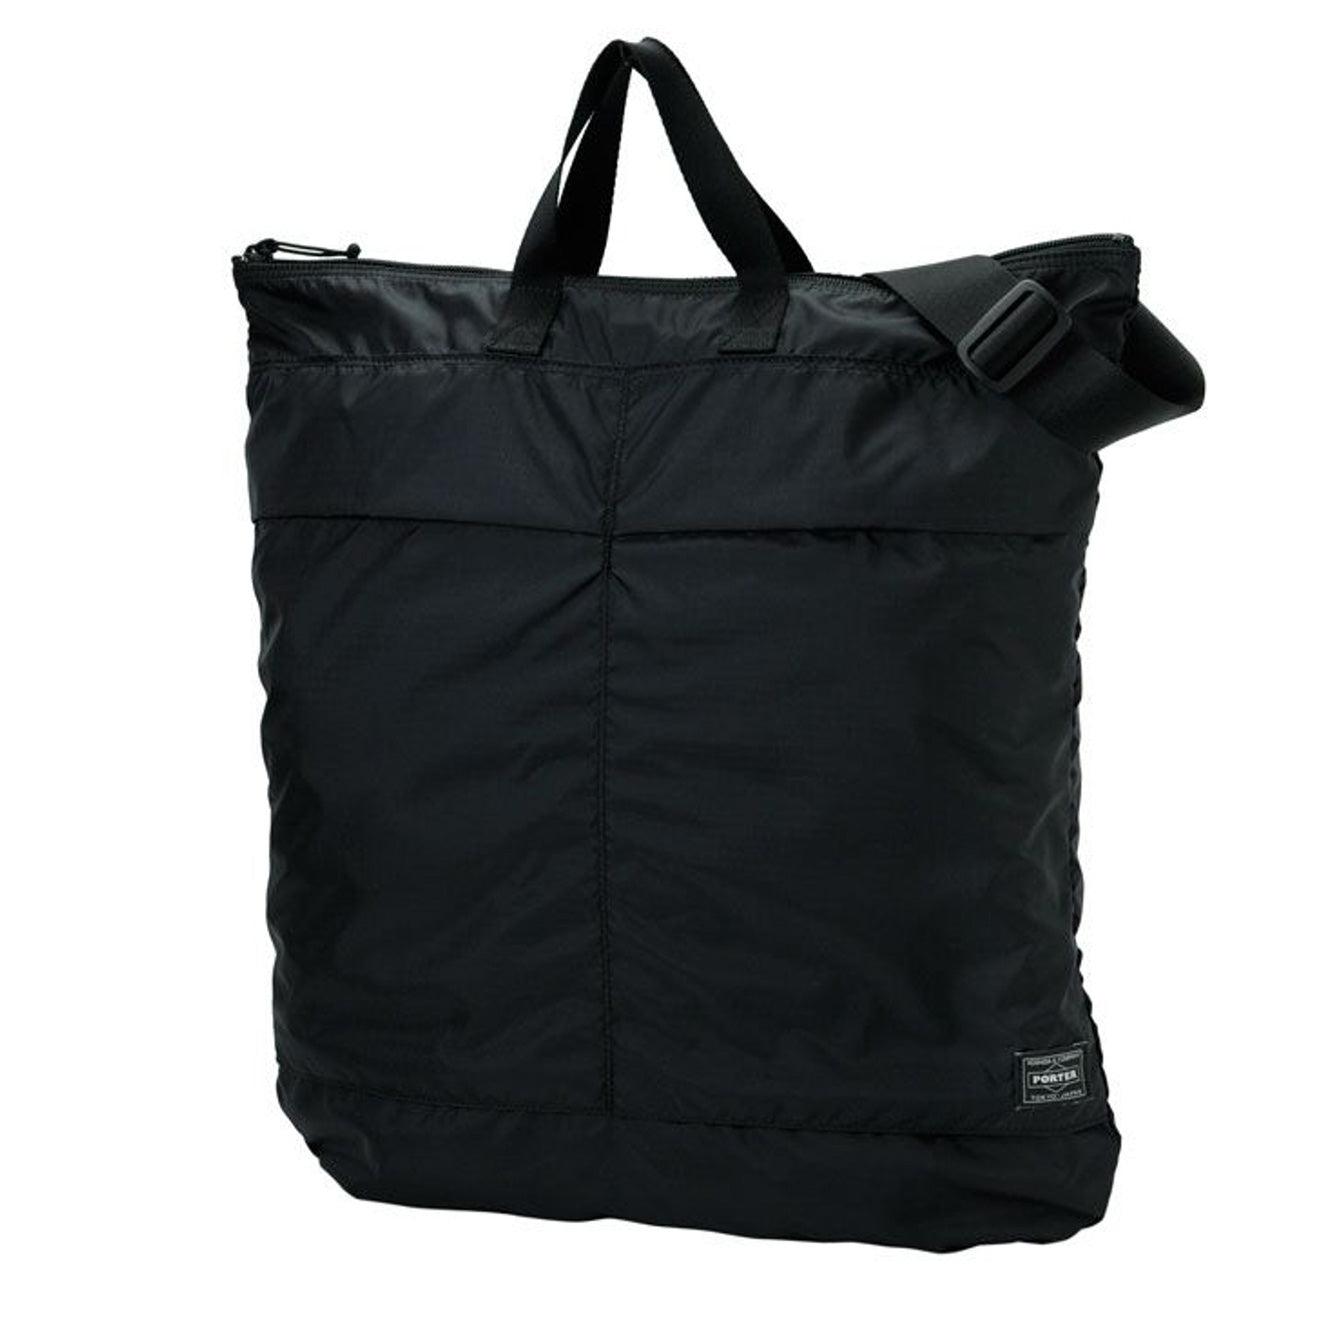 Porter-Yoshida and Co Flex 2-way Helmet Bag in Black for Men | Lyst